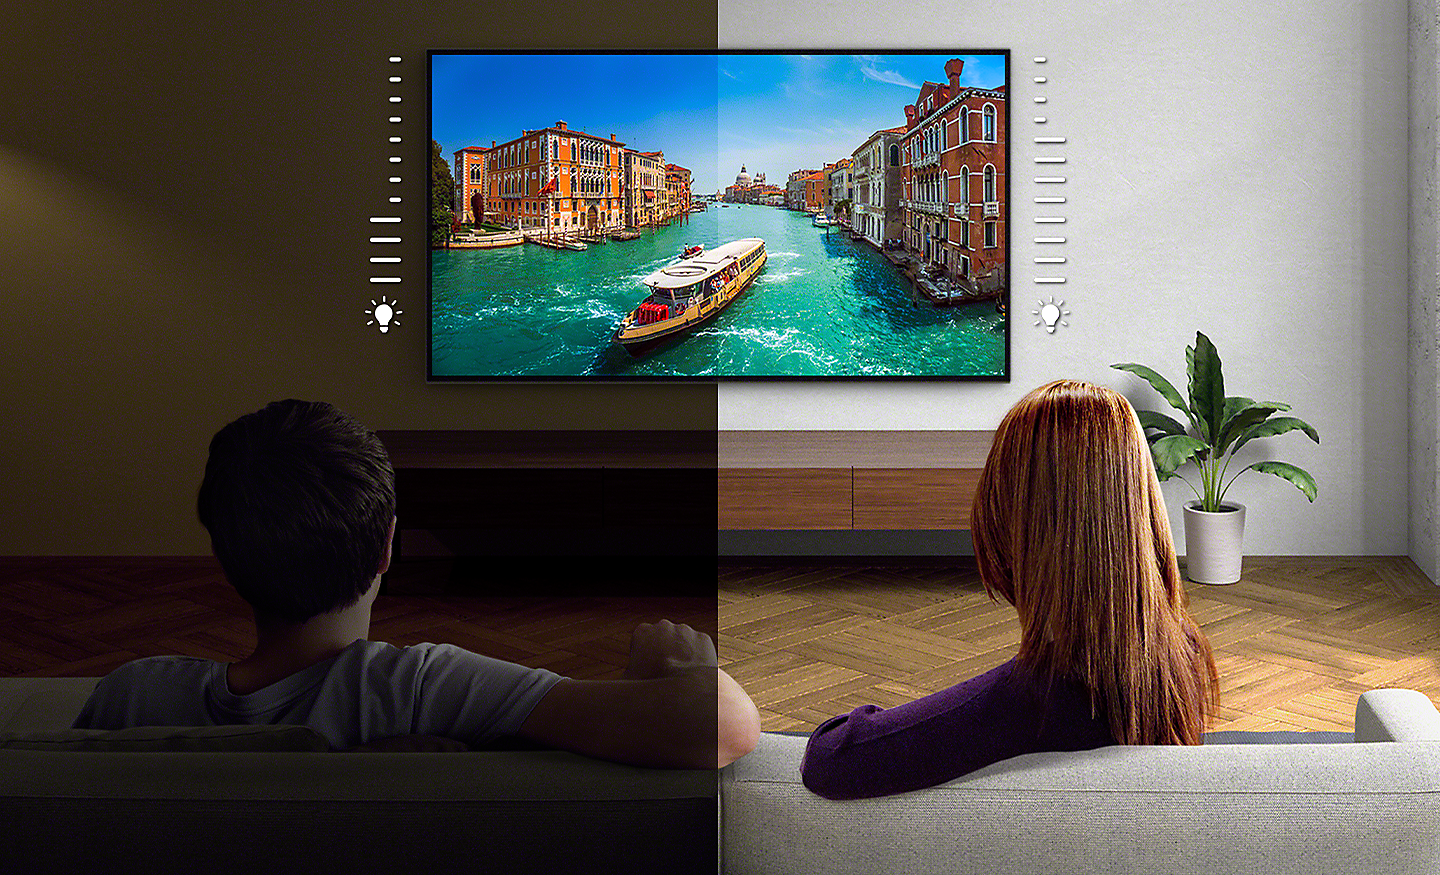 Razdeljena slika para, ki gleda televizor - leva stran je temnejša od desne